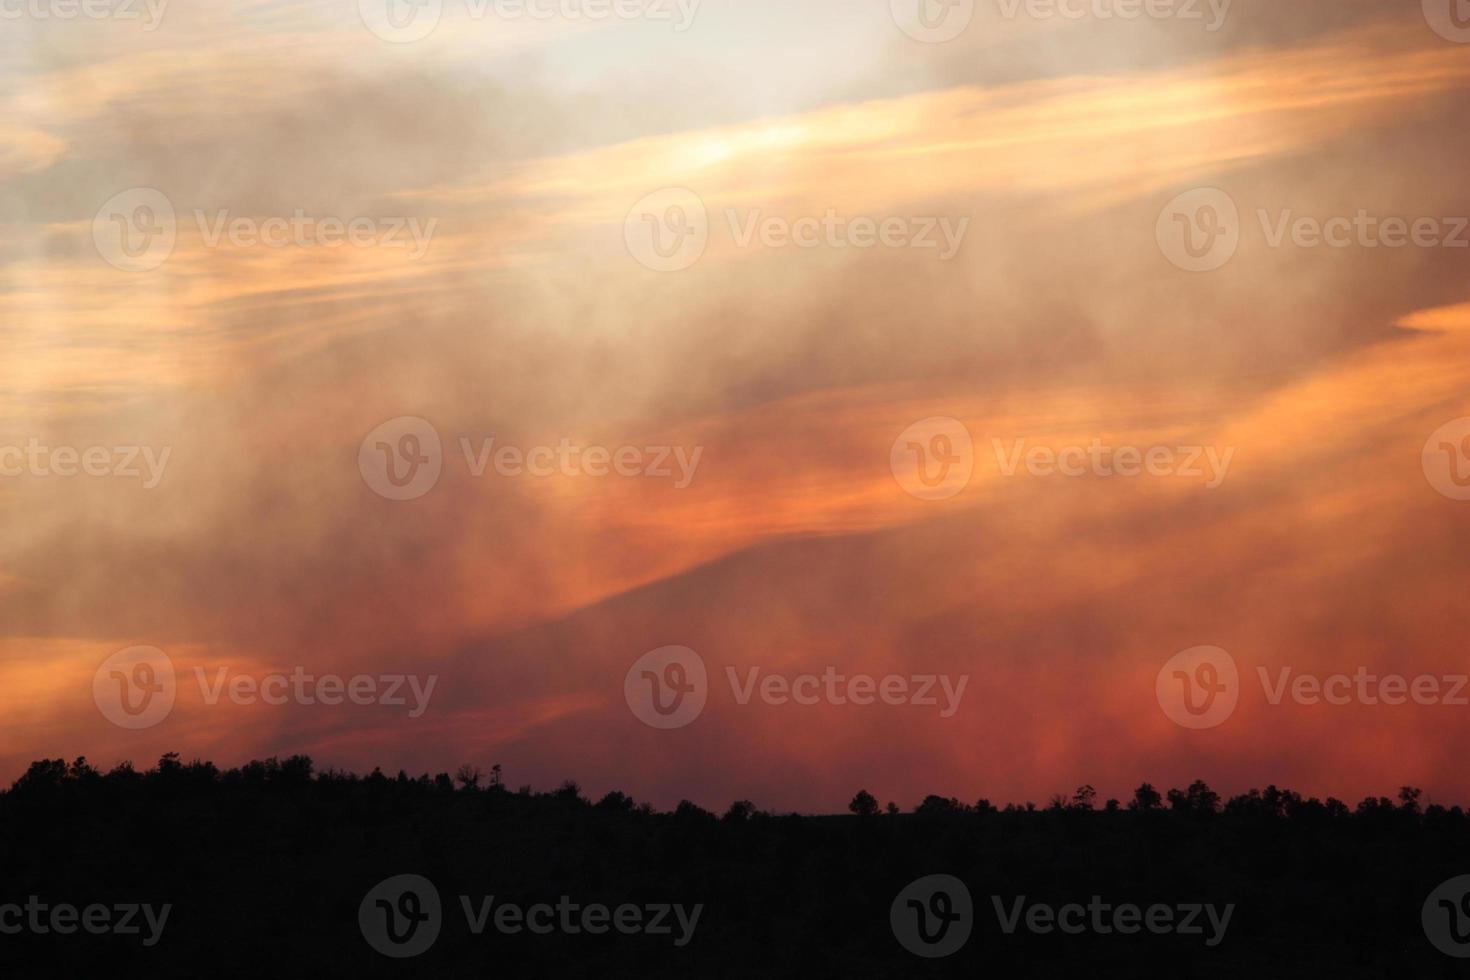 genomskinliga lager av rök och moln på himlen vid solnedgången under en skogsbrand foto